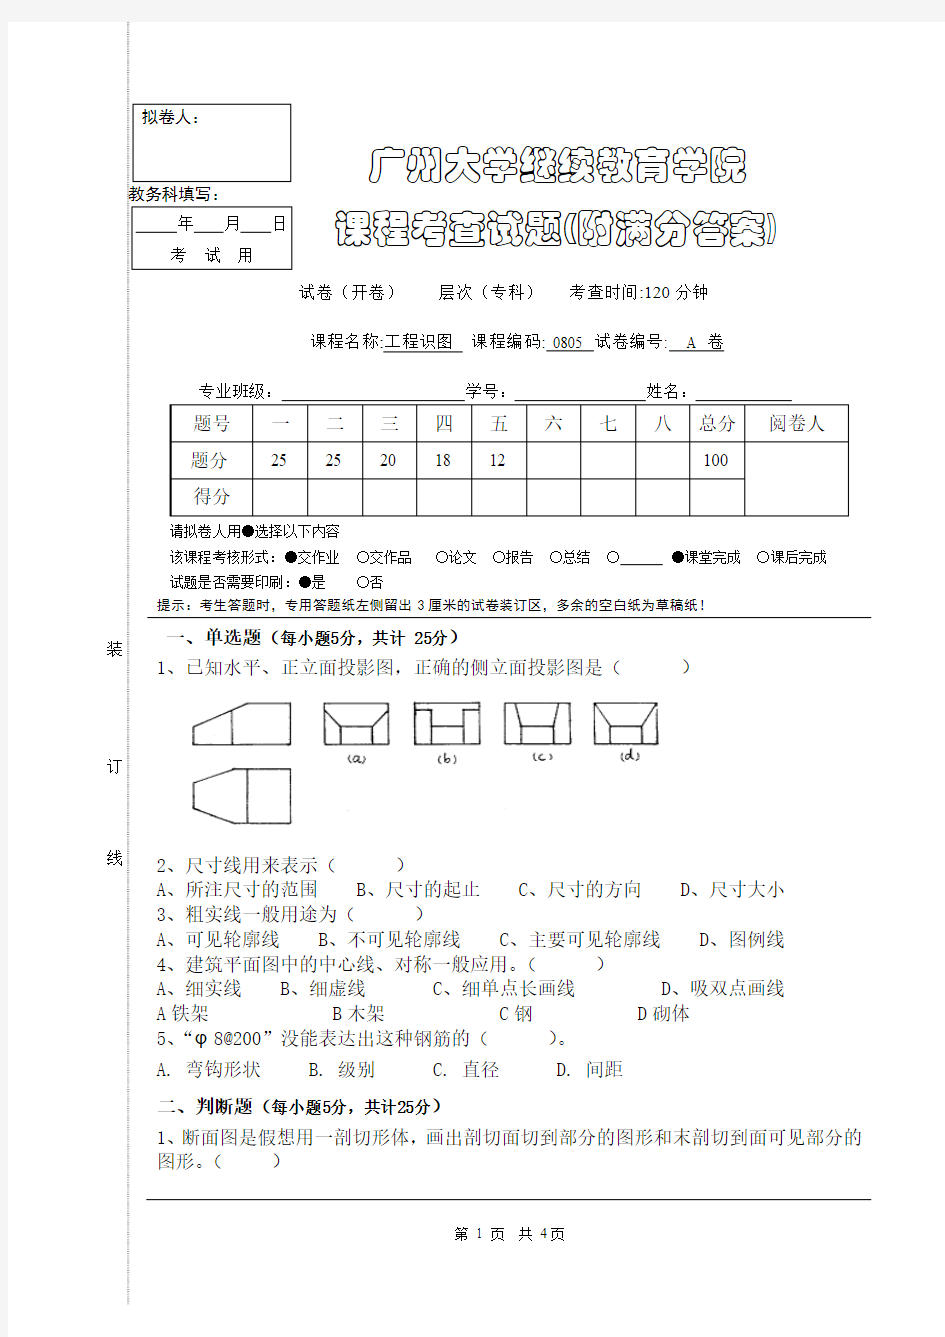 广州大学工程识图期末考试试卷(后附满分答案)